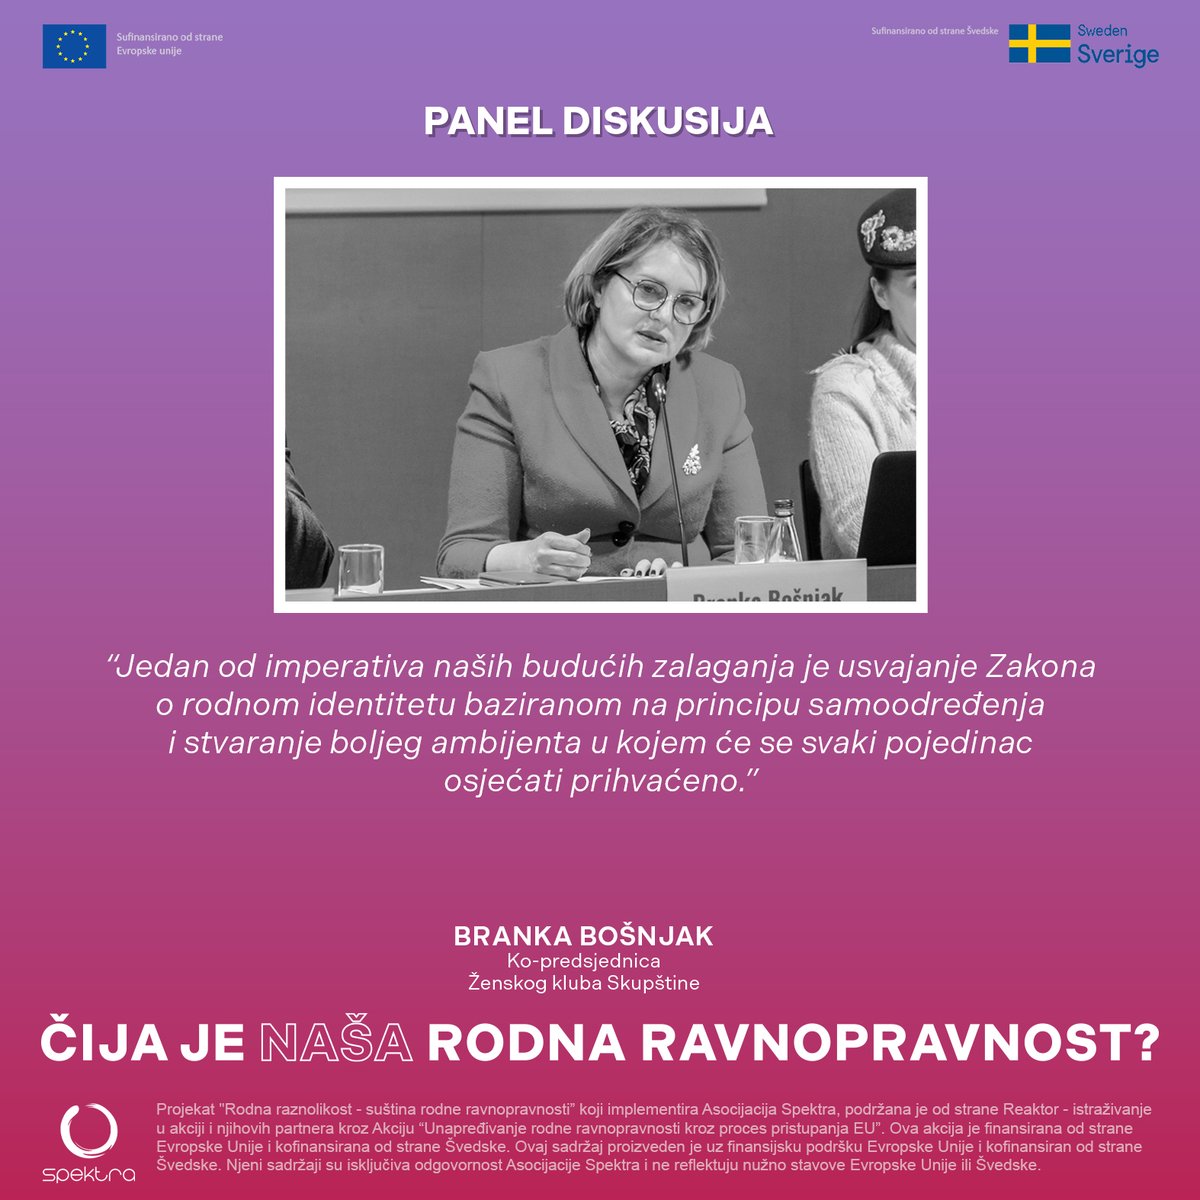 Ko-predsjednica @KlubCg  @SkupstinaCG  i poslanica @branka_bosnjak   je govorila o važnosti usvajanja Zakona o rodnom identitetu zasnovanog na principu samoodređenja.